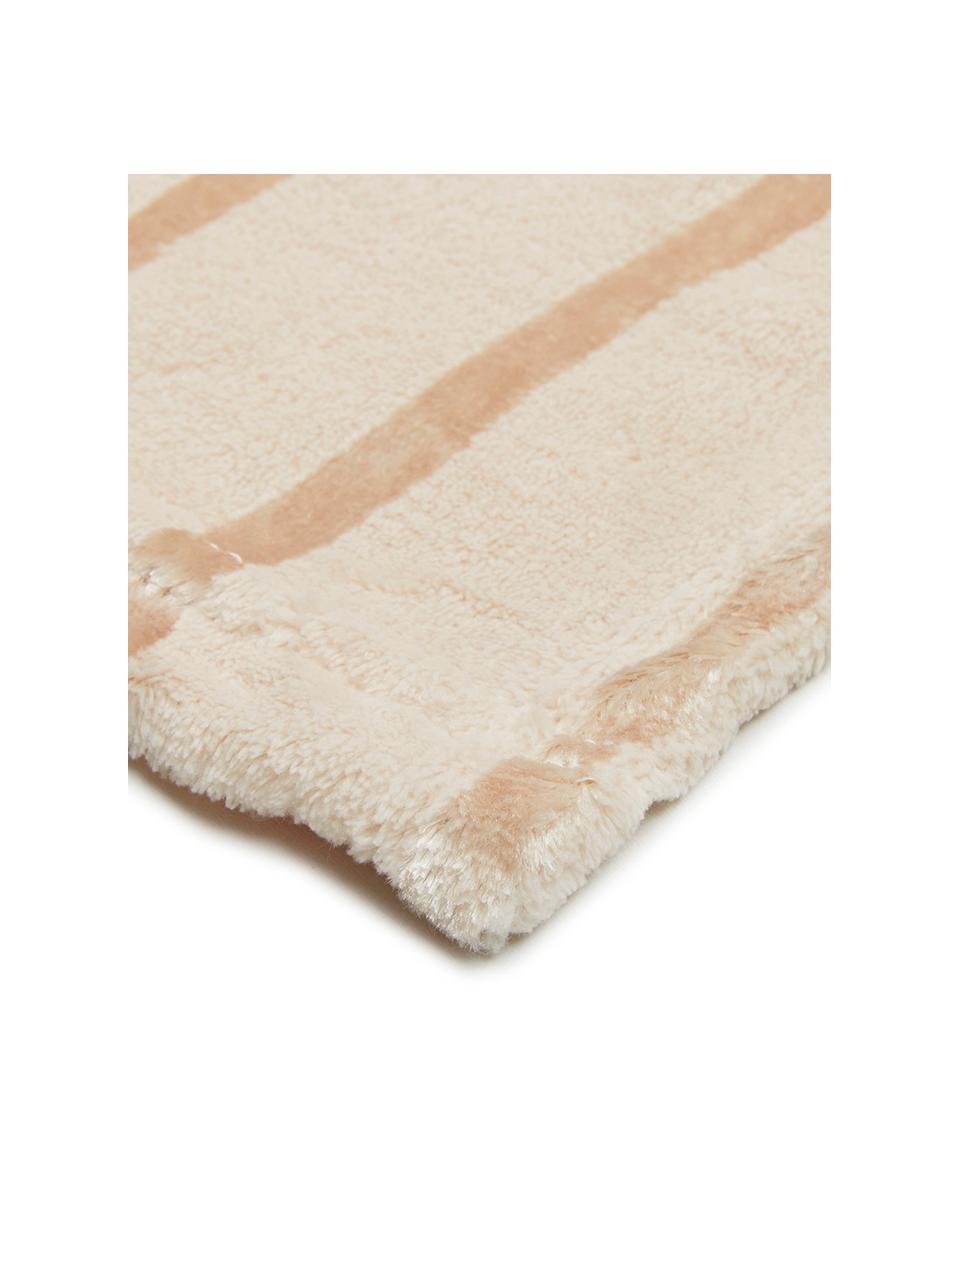 Weiches Fleece-Plaid Clyde mit schimmernden Streifen, 100% Polyester, Beige, Gebrochenes Weiß, 130 x 160 cm